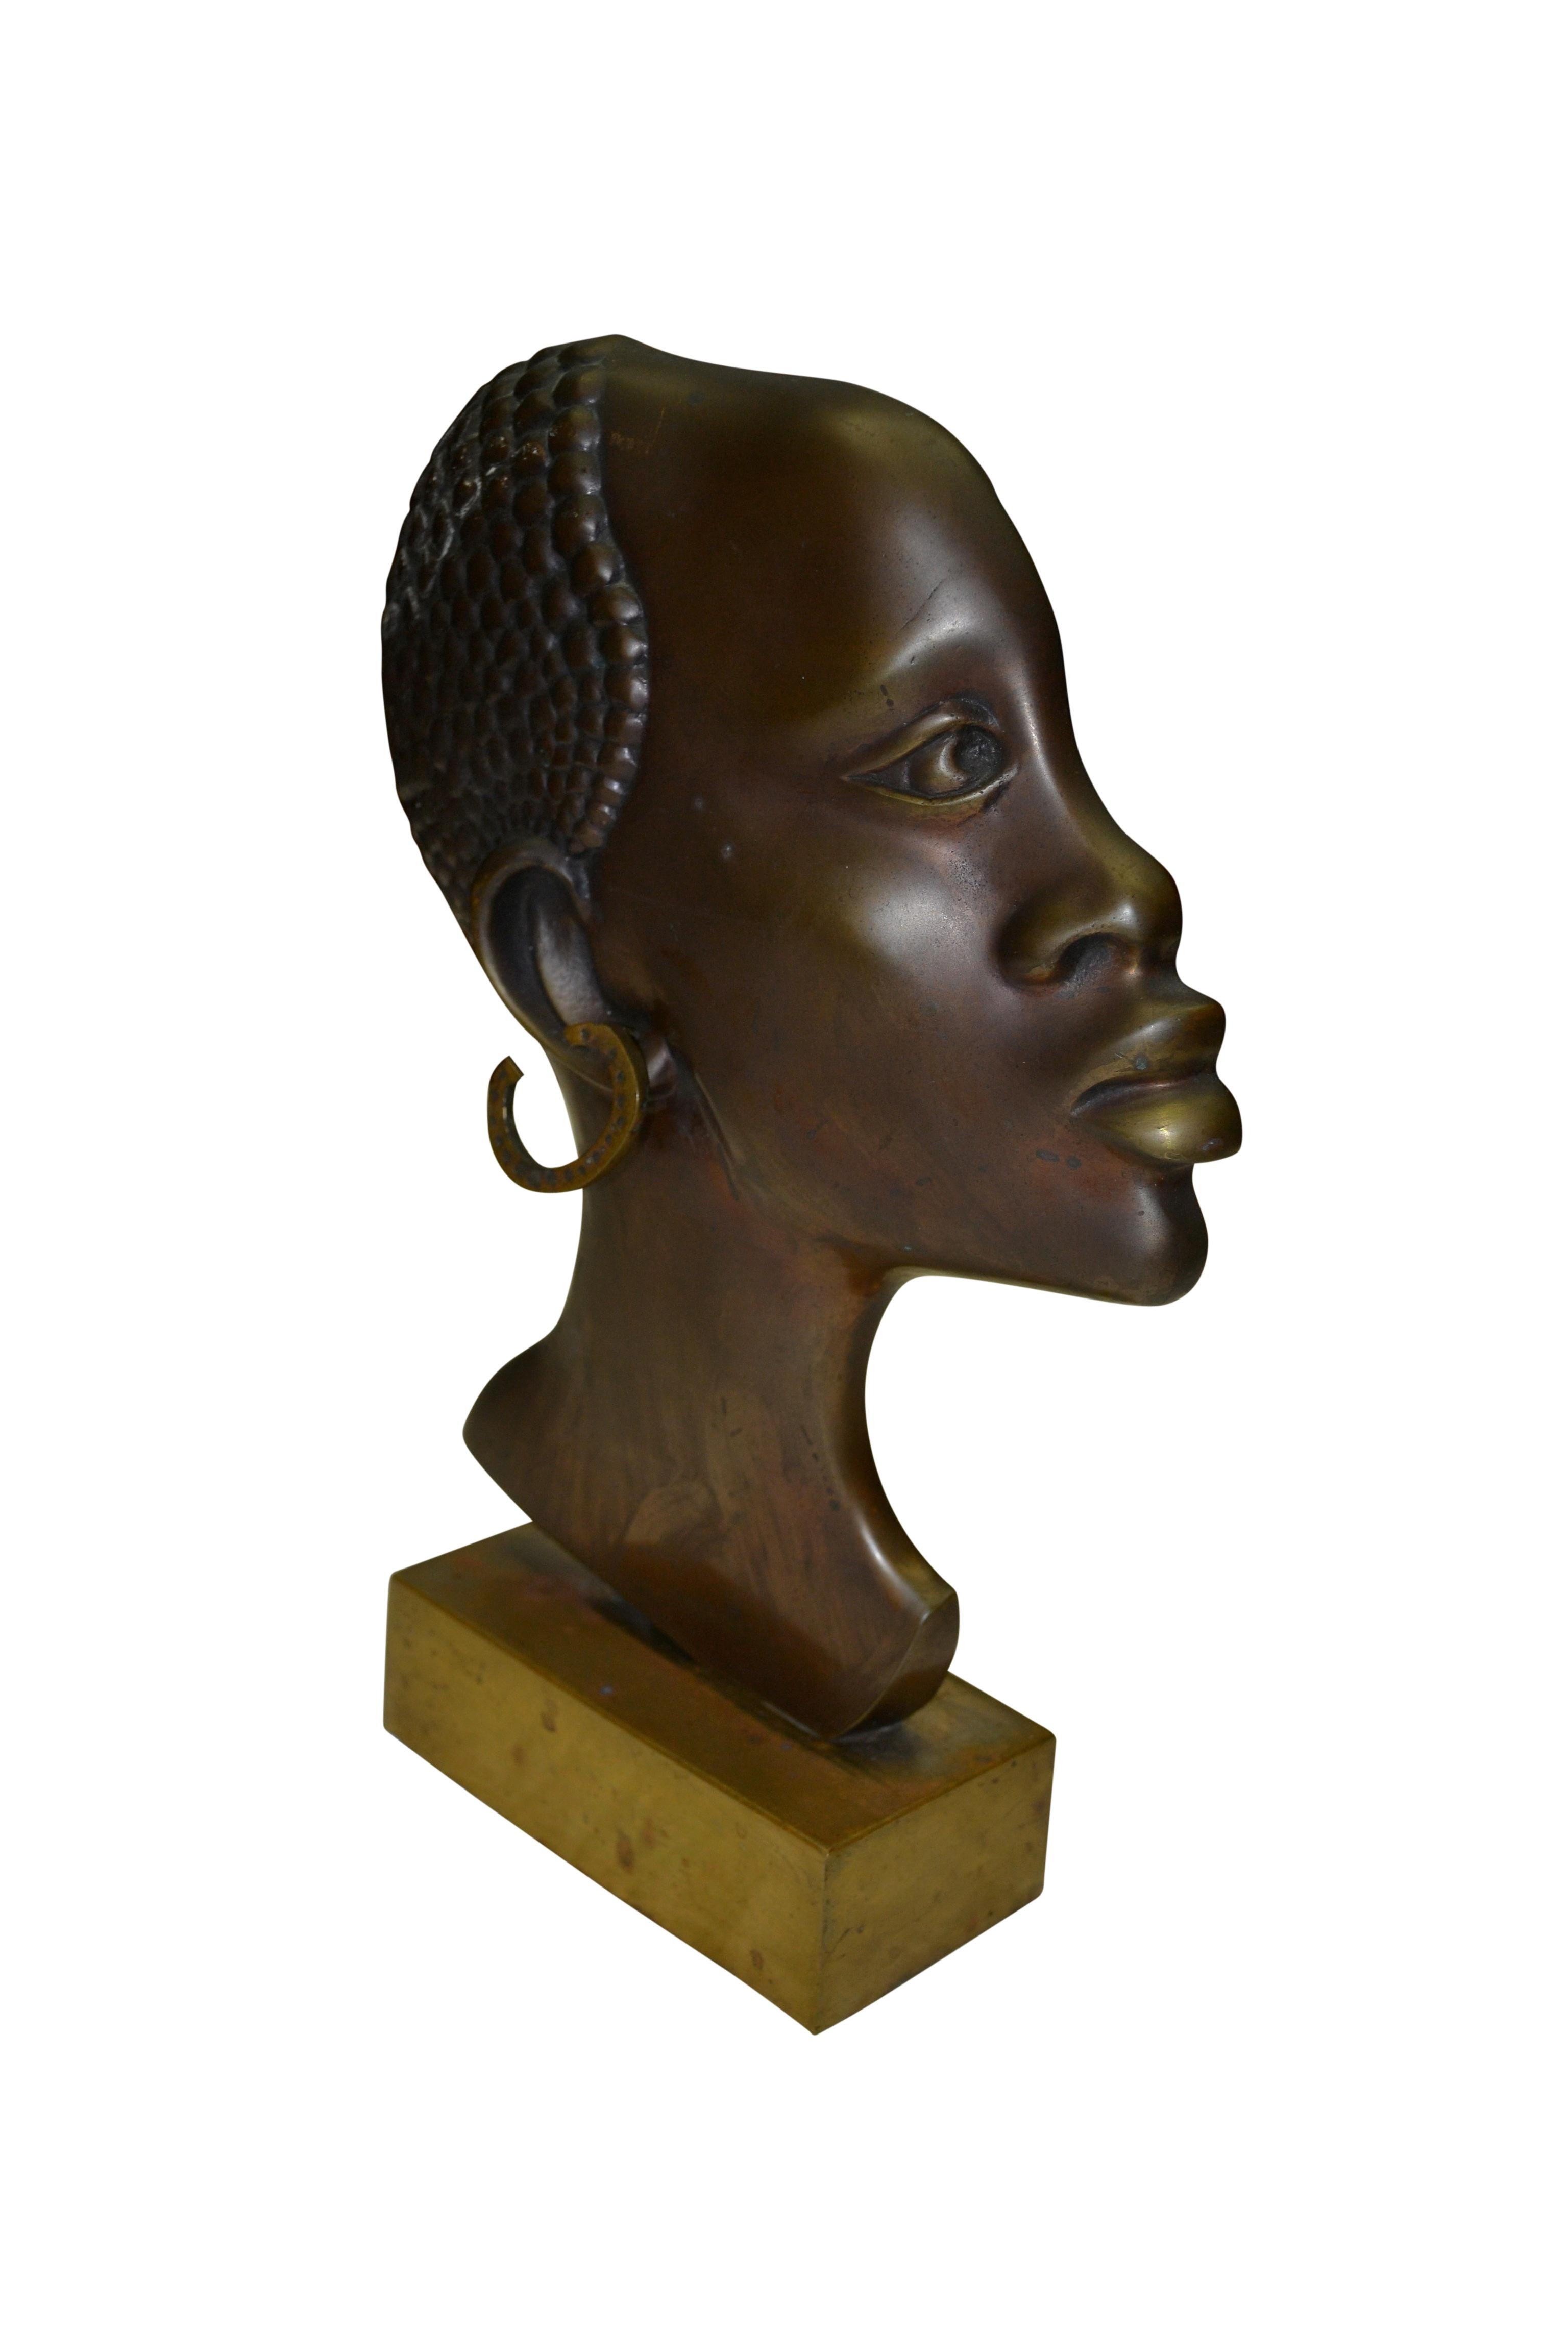 Busto de bronce bien fundido de perfil de una mujer africana sobre una base rectangular de latón. No está firmado y no tiene marcas. El origen podría ser la propia África o Francia Periodo Art Déco.